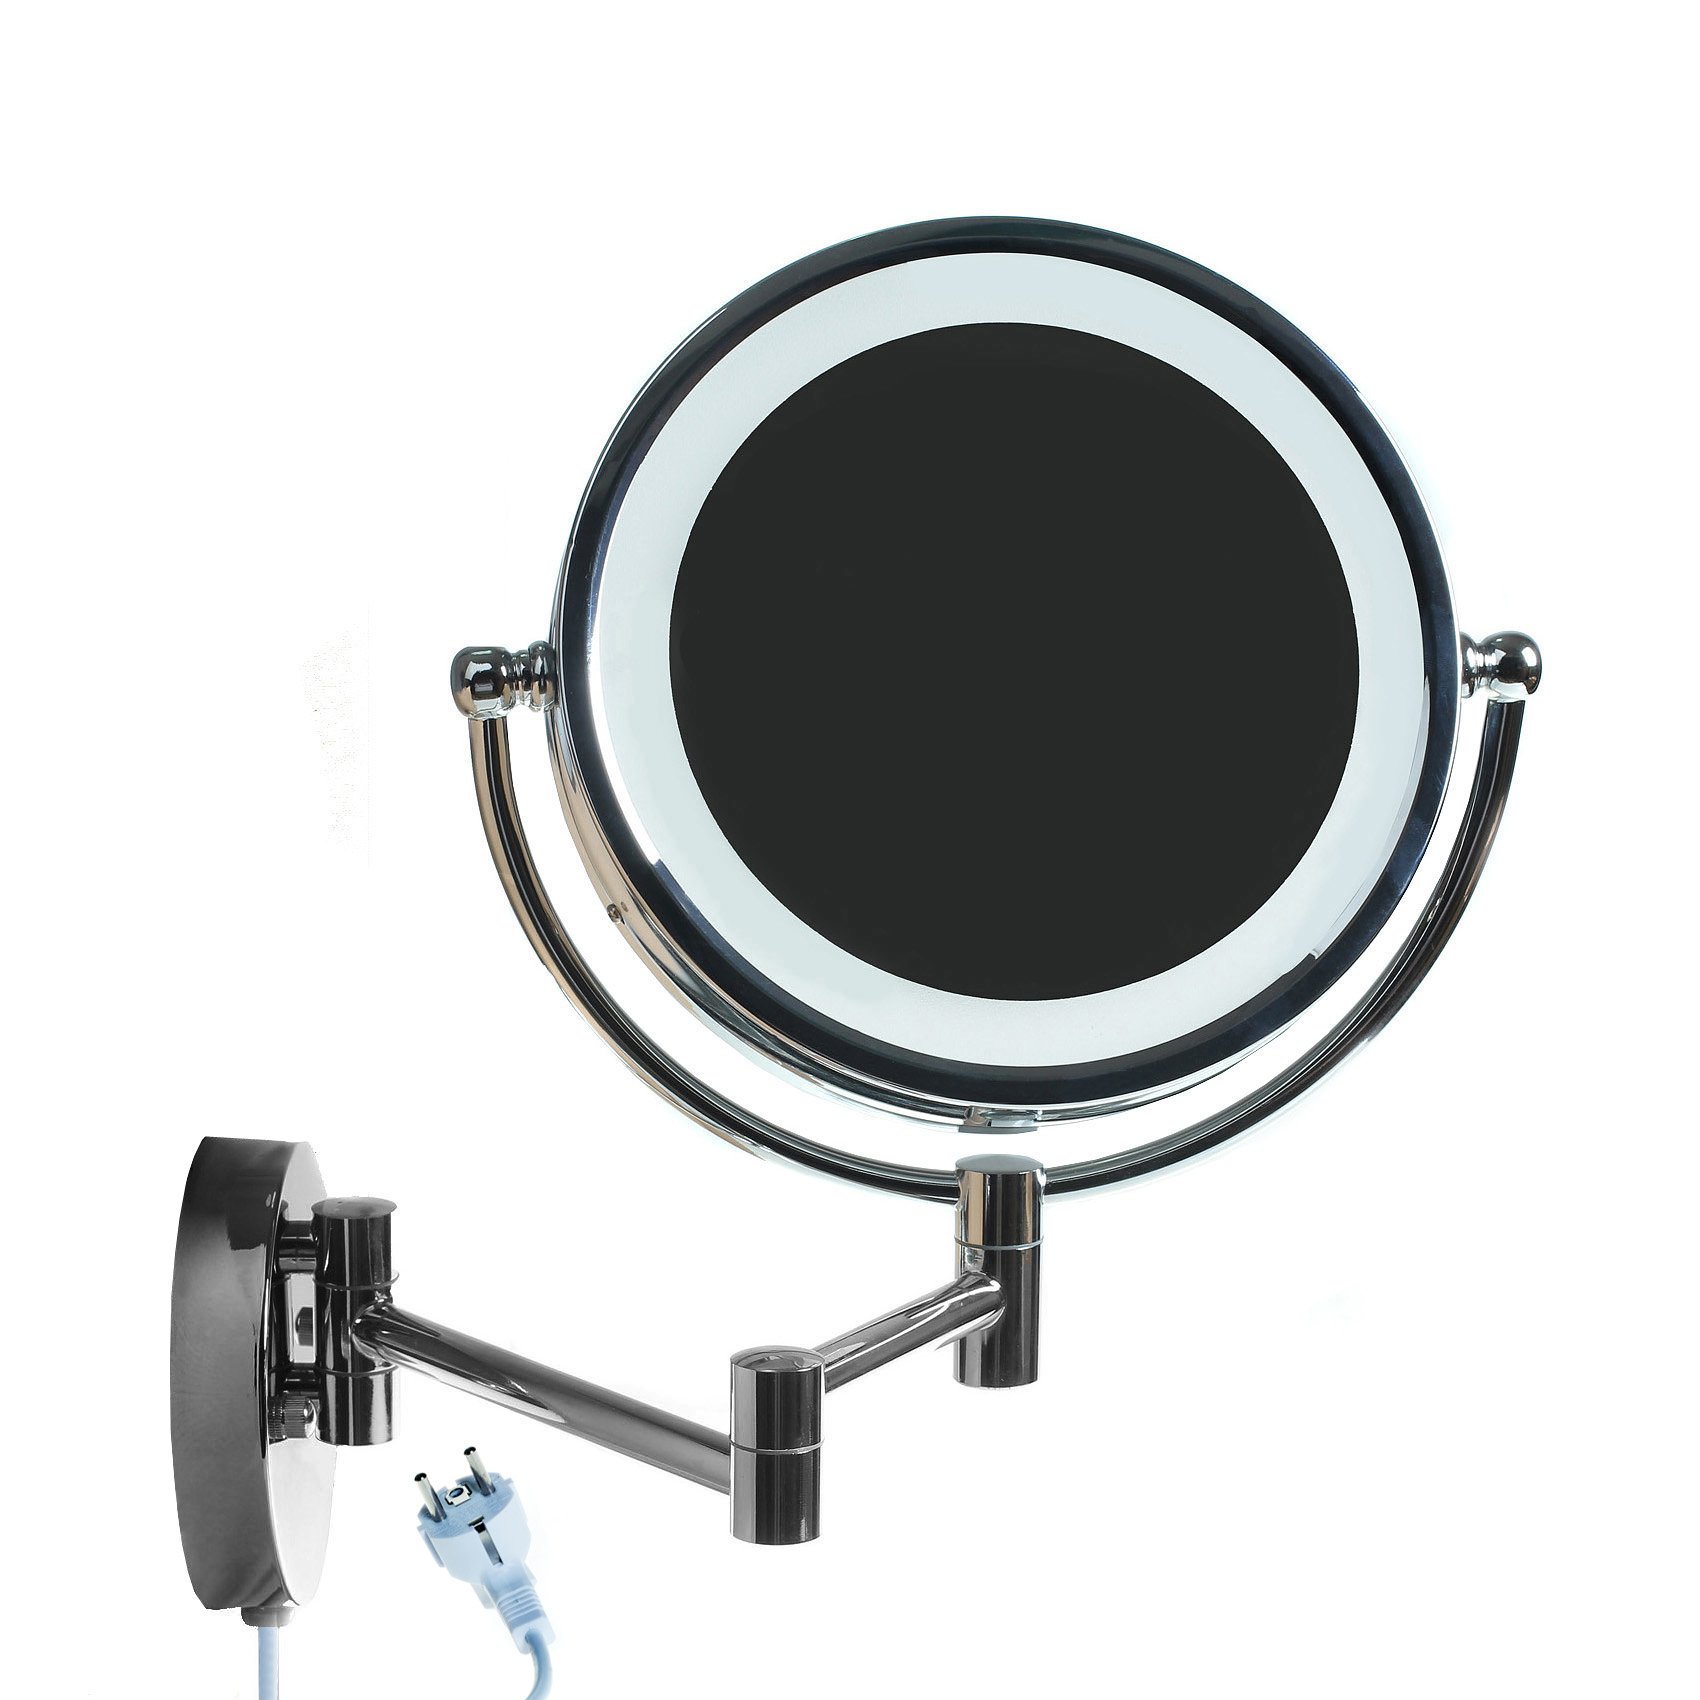 HIMRY LED Wandspiegel KosmetikSpiegel 8,5 Zoll, 10x Vergrößerung, Beleuchteter Kosmetik Spiegel, Make-up, Rasieren, Badezimmer Spiegel Faltbar Verstellbar, Verchromtes Metall, KXD3132-10x